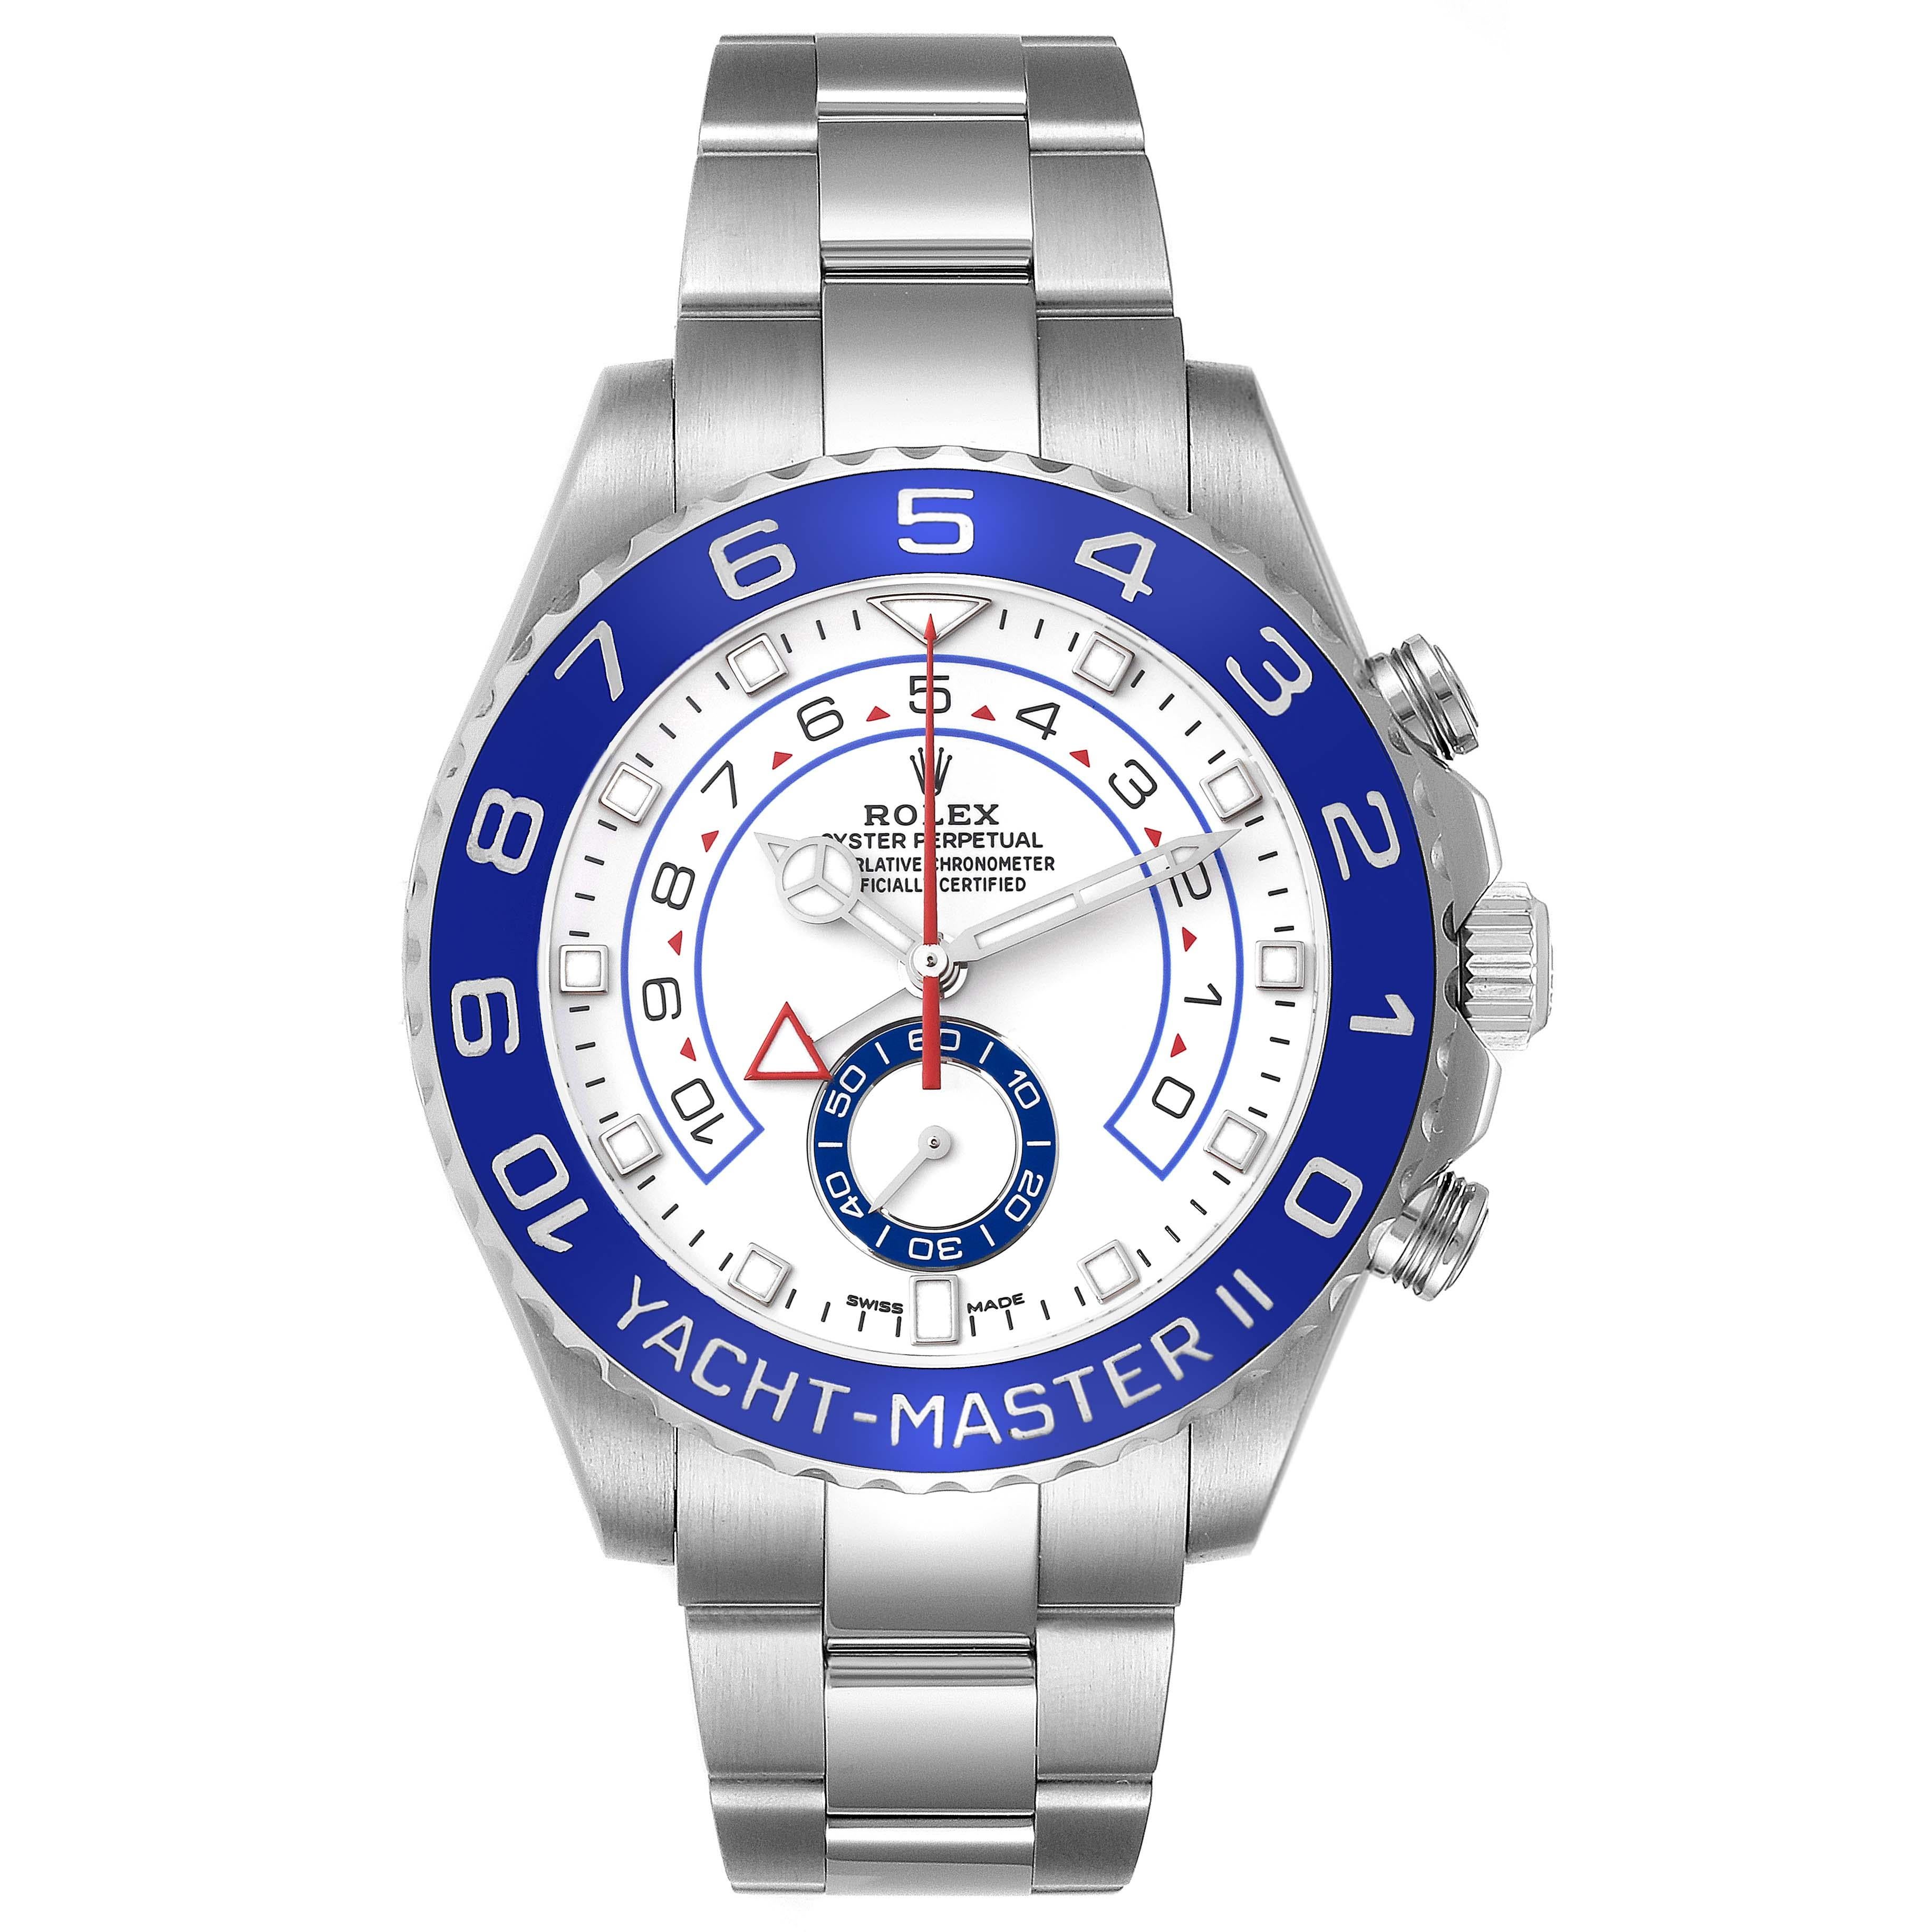 Rolex Yachtmaster II 44 Blue Cerachrom Bezel Steel Mens Watch 116680. Mouvement à remontage automatique certifié chronomètre avec fonction chronographe Regatta. Boîtier en acier inoxydable de 44.0 mm de diamètre. Couronne et fond vissés. Logo Rolex